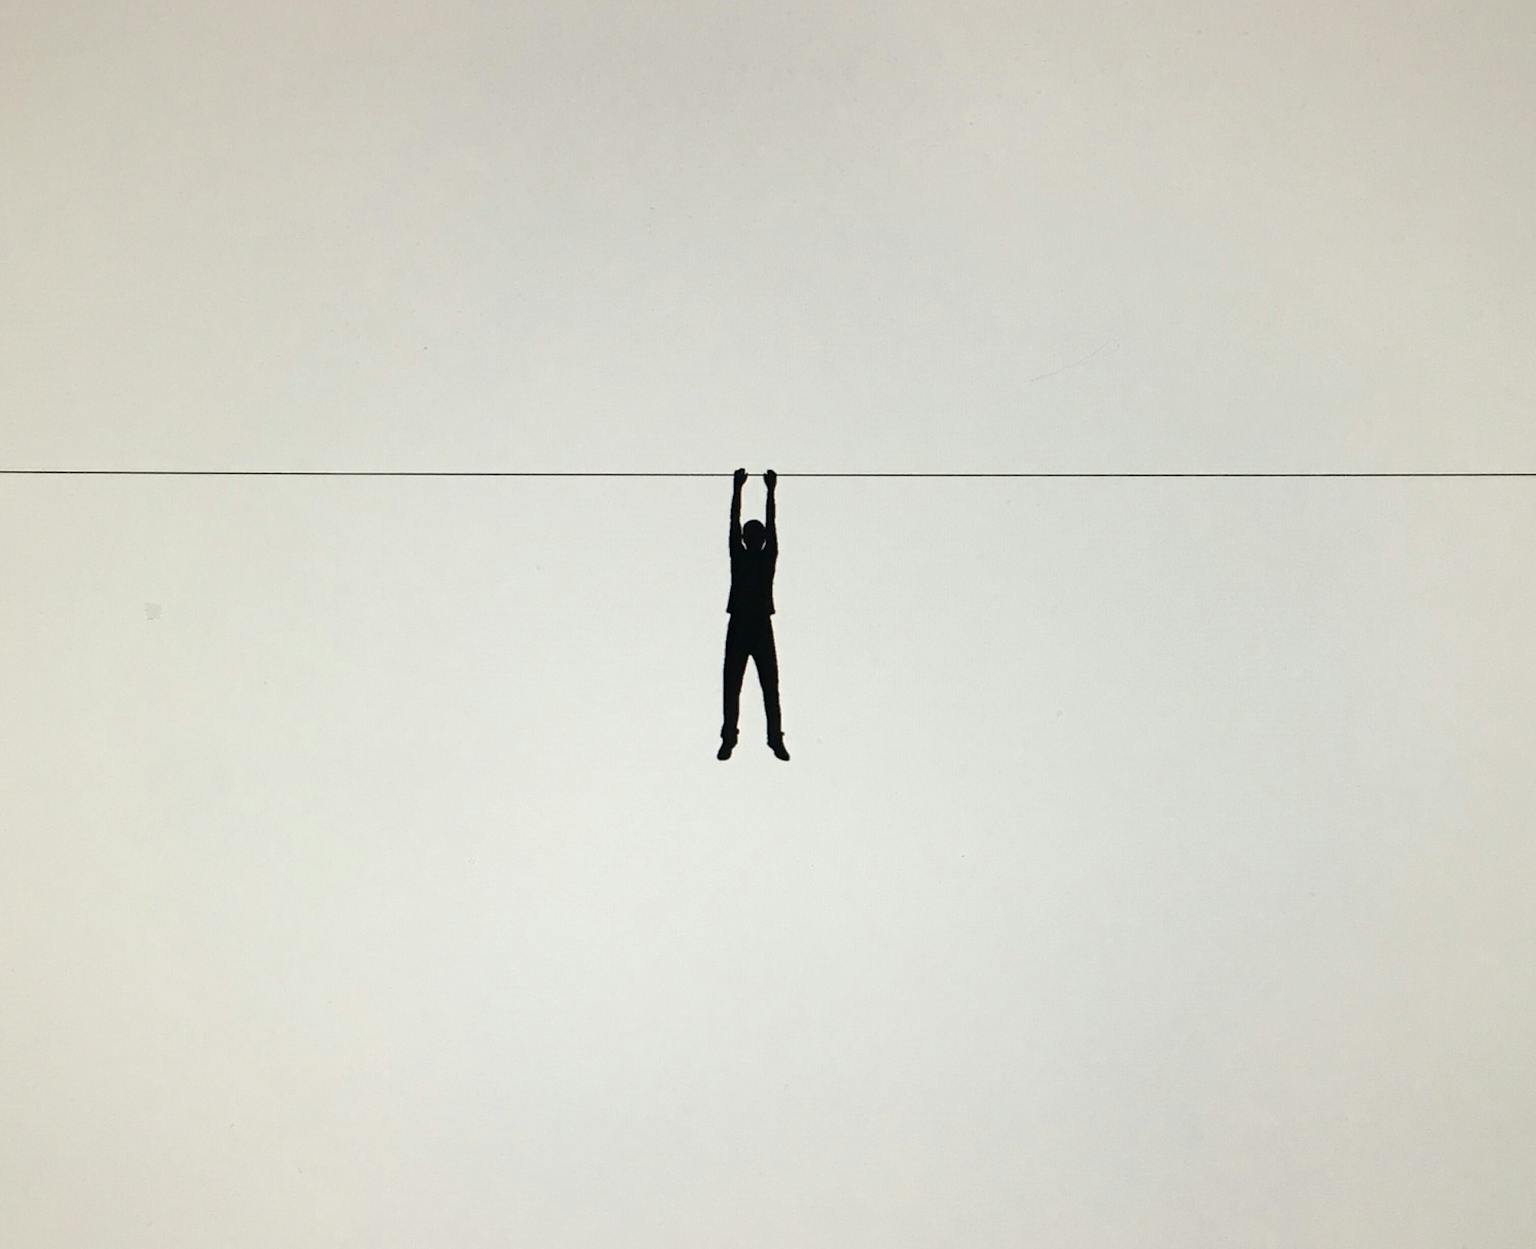 Een silhouet van een persoon die aan een draad hangt.